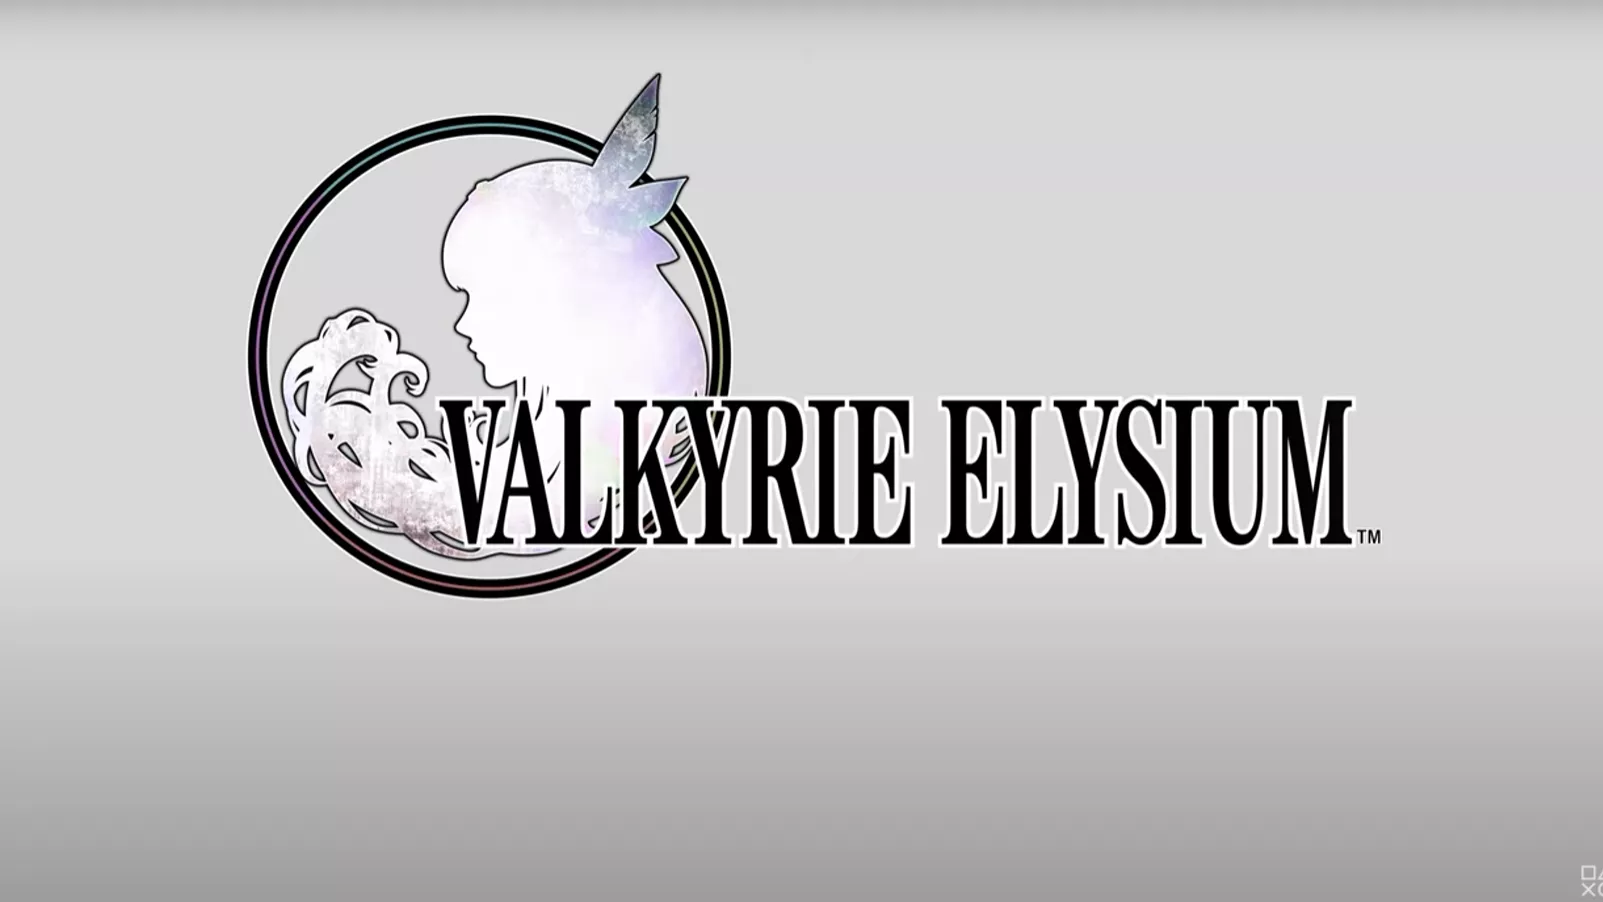 Valkyrie Elysium für PS4, PS5 und PC angekündigt Heropic